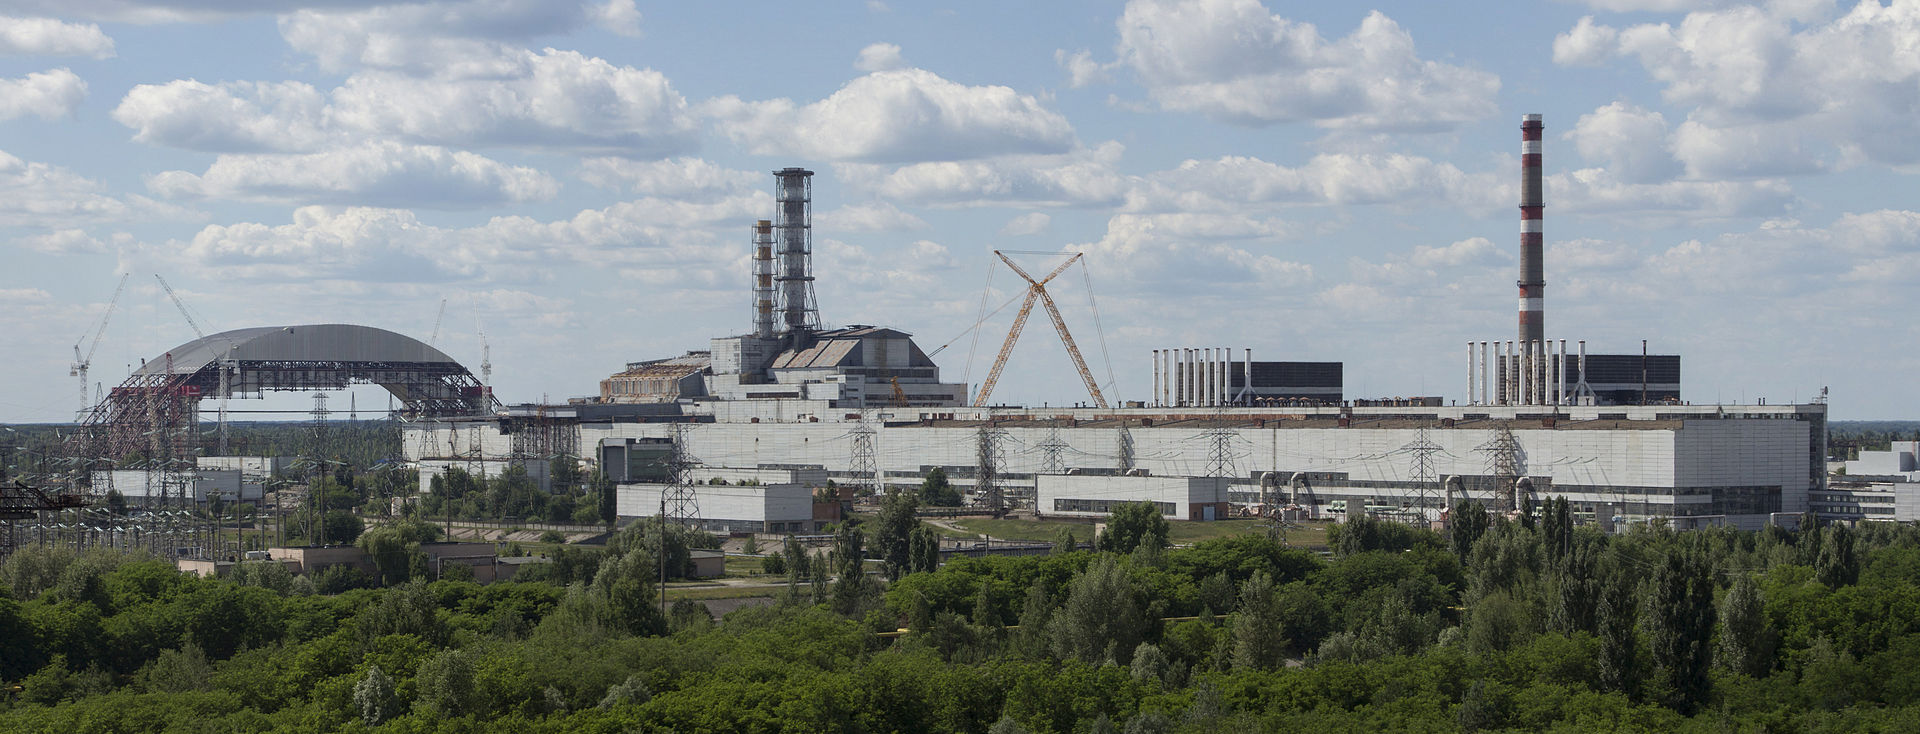 ЕБРР выделил Украине 350 млн евро на строительство чернобыльского саркофага